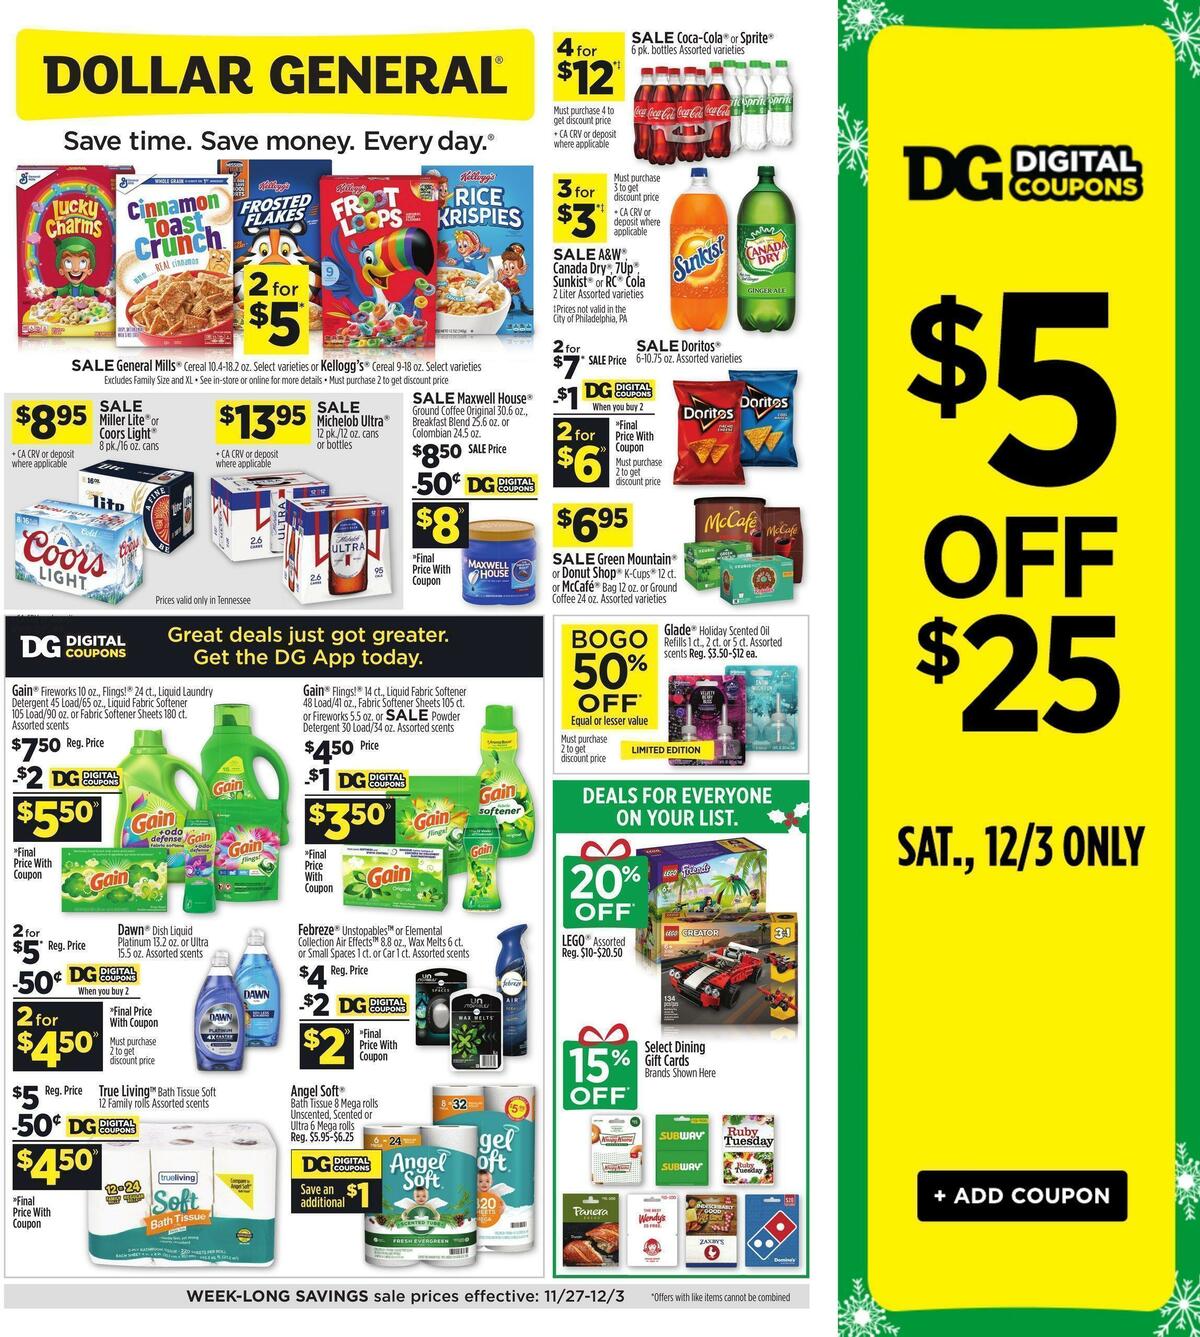 Dollar General Weekly Ads and Circulars from November 27